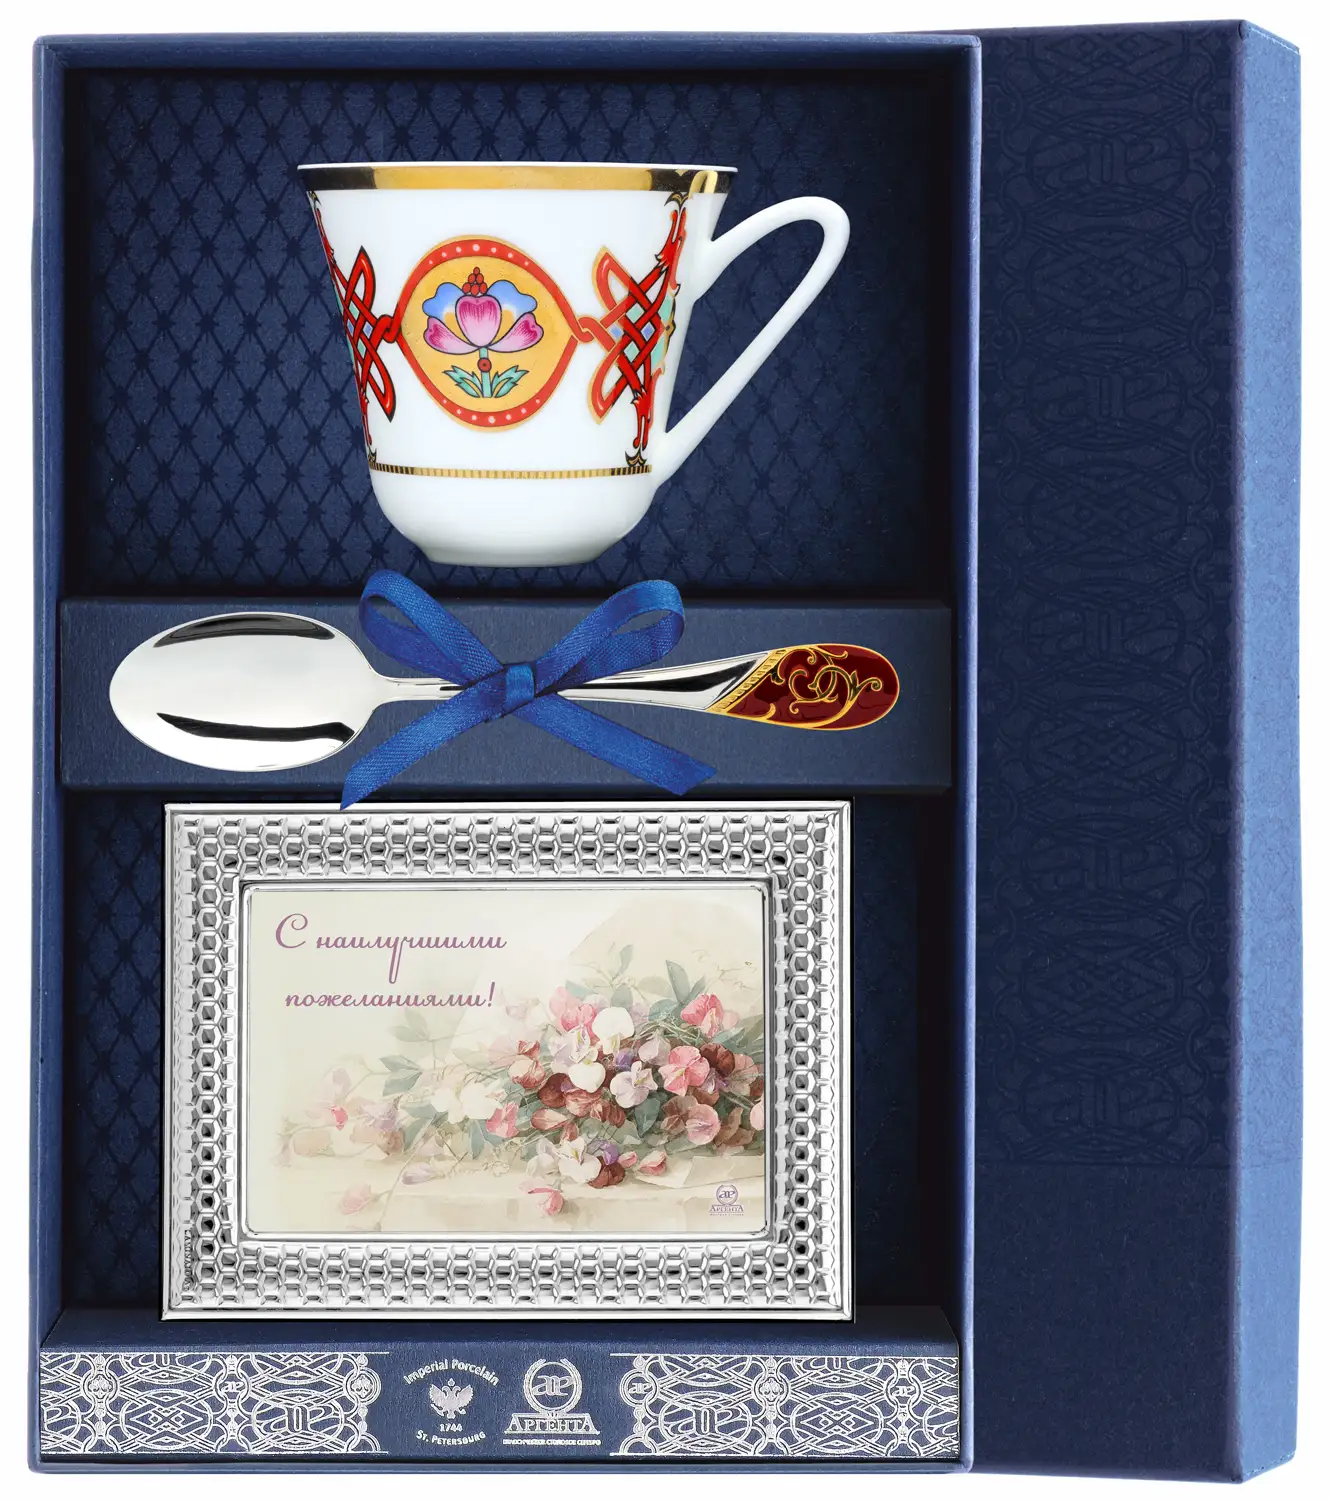 Набор чайный Сад - Византия: ложка, рамка для фото, чашка (Серебро 925) набор чайный ландыш желтые цветы ложка рамка для фото чашка серебро 925